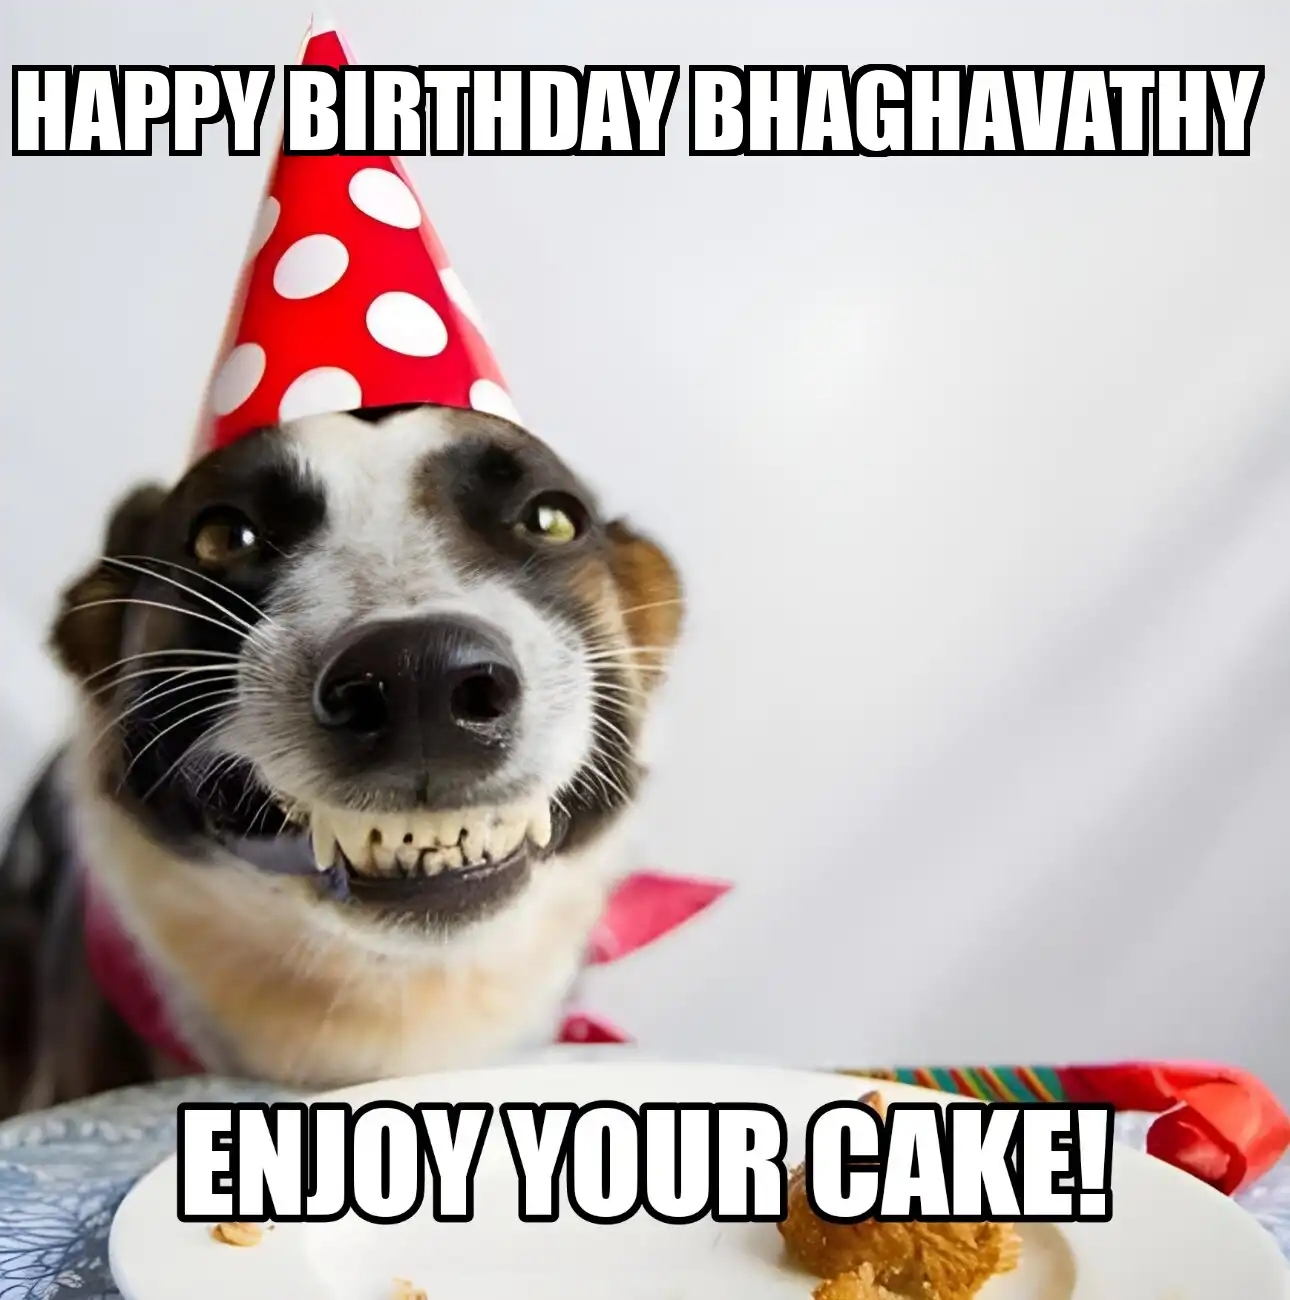 Happy Birthday Bhaghavathy Enjoy Your Cake Dog Meme